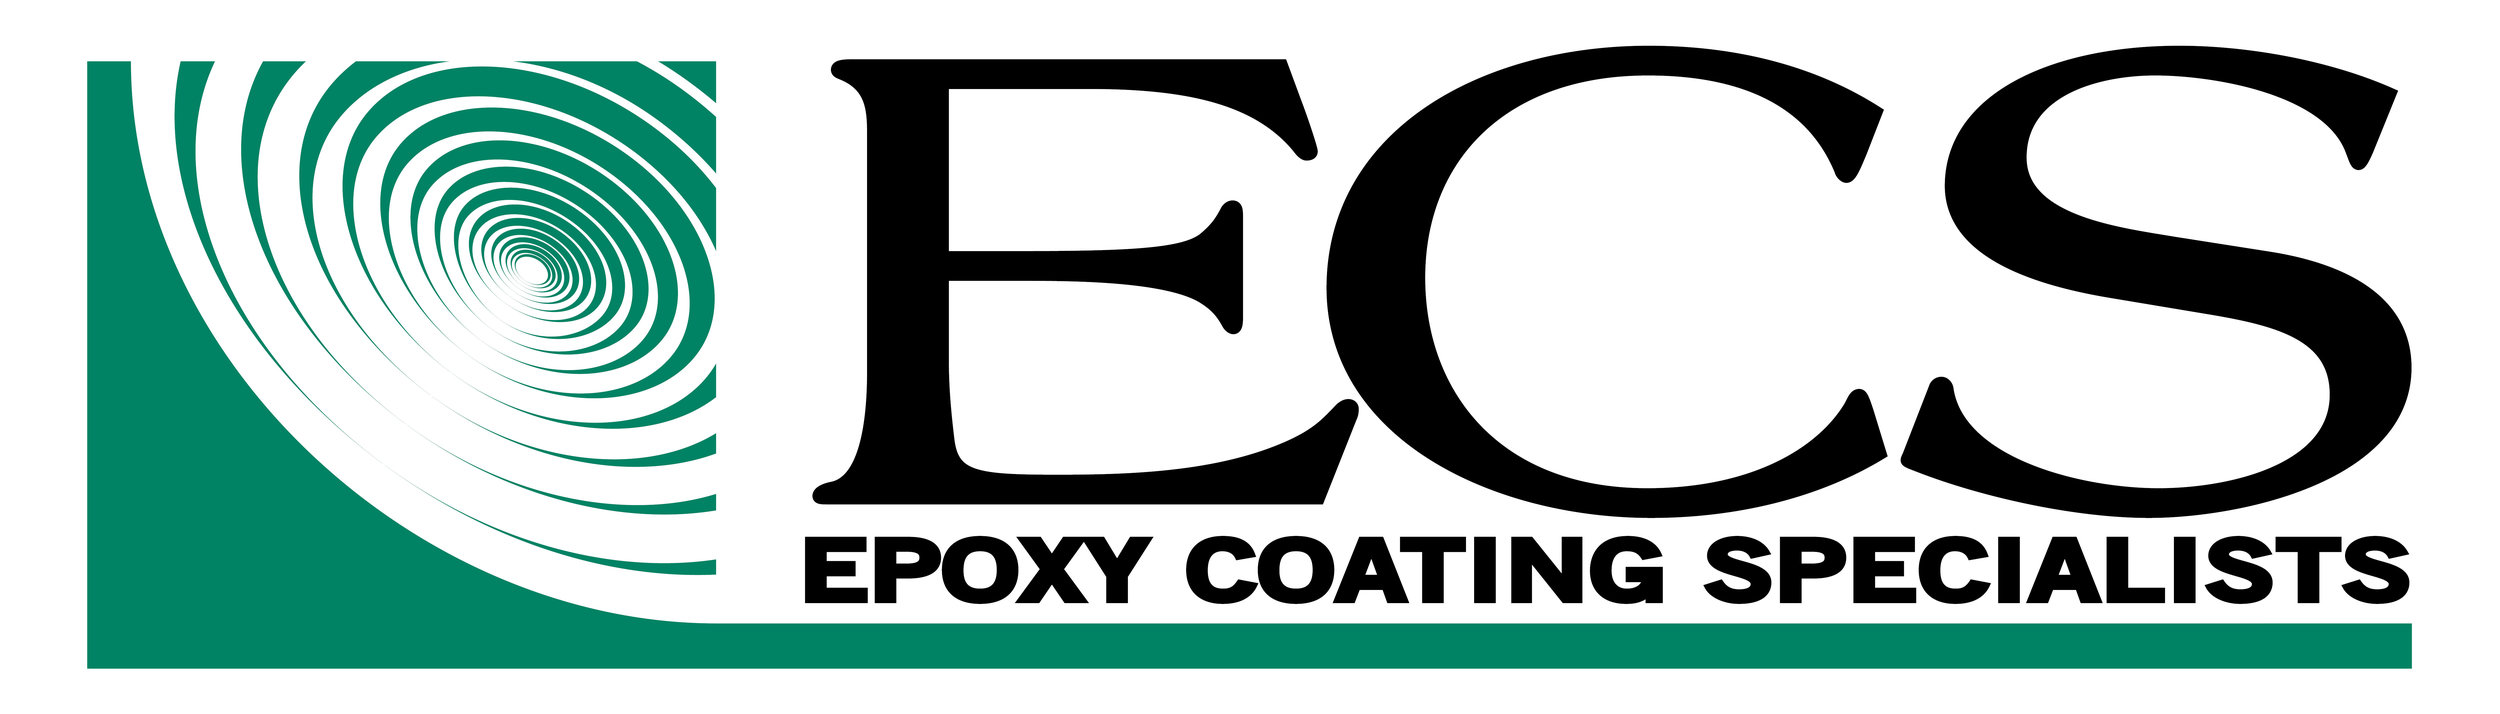 Epoxy Coating Logo - Web.jpg